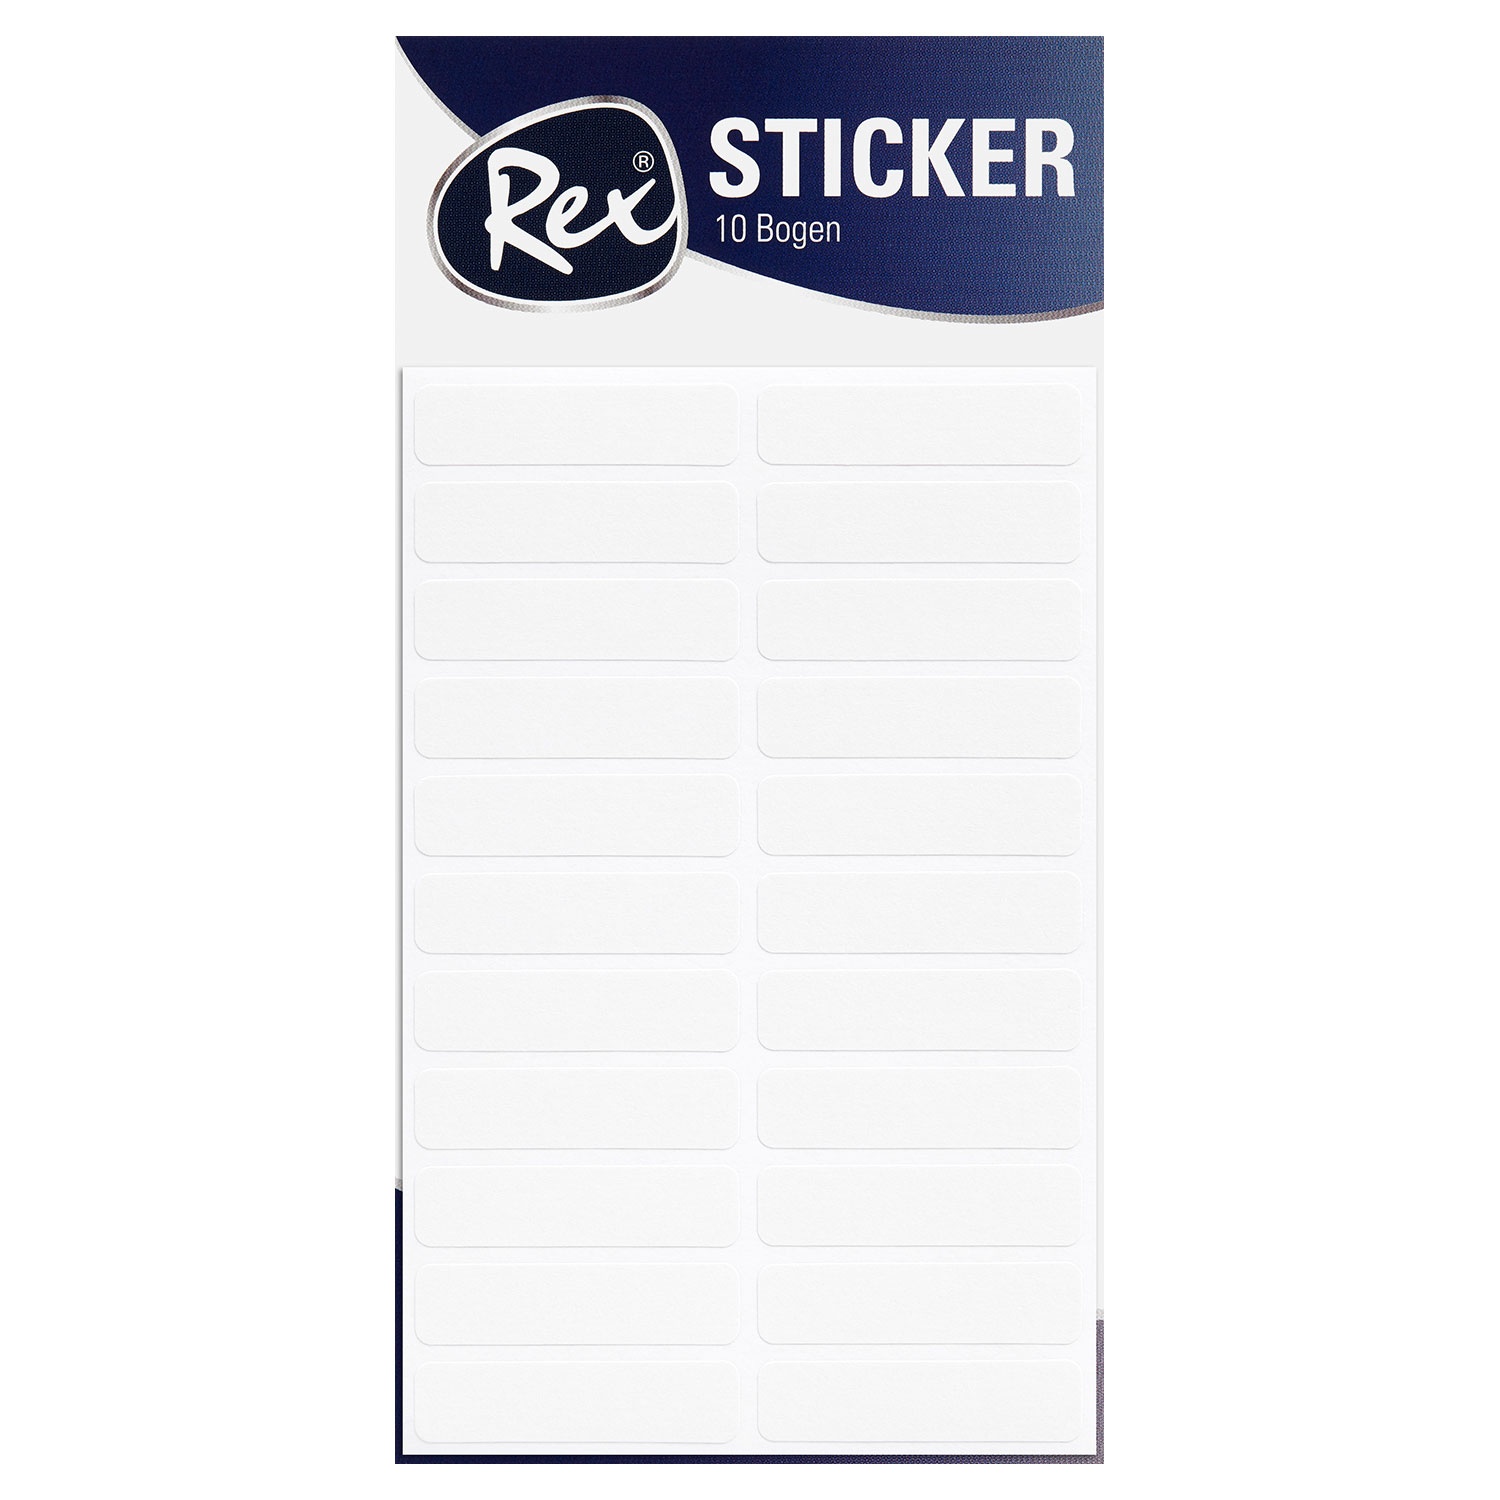 REX® Sticker, 10 Bögen